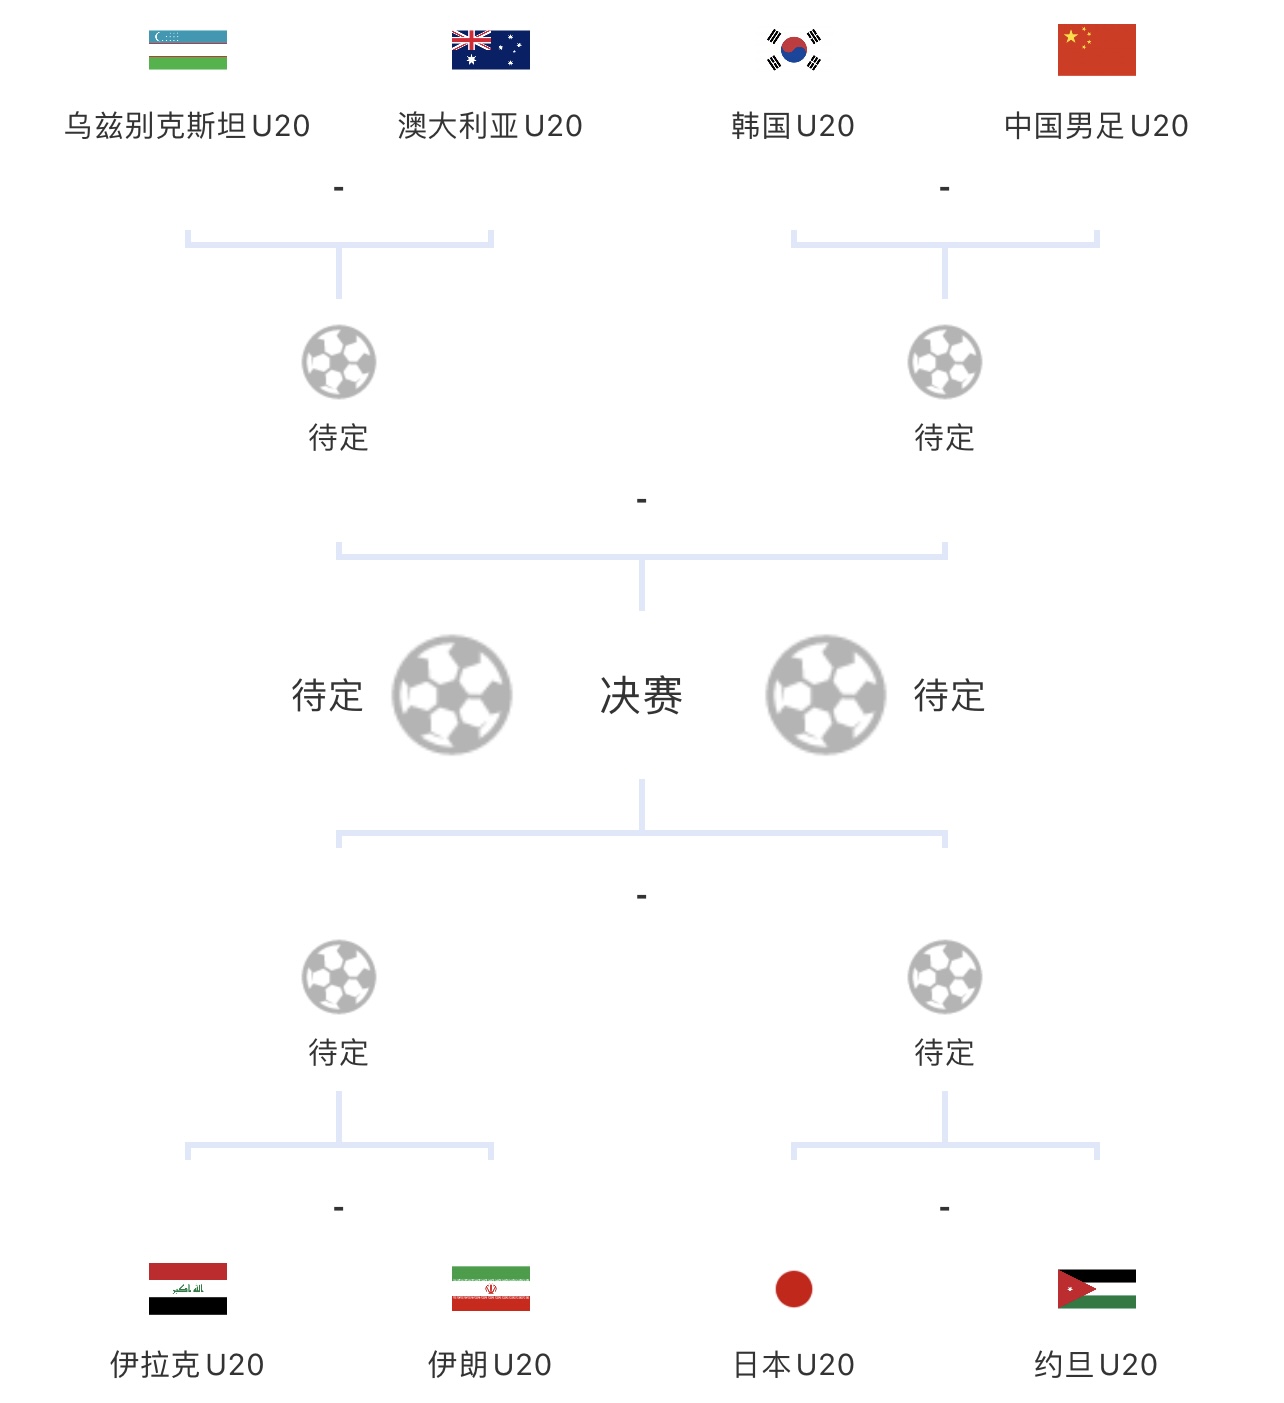 亚足联已发布了2024卡塔尔亚洲杯比赛赛程。中国...